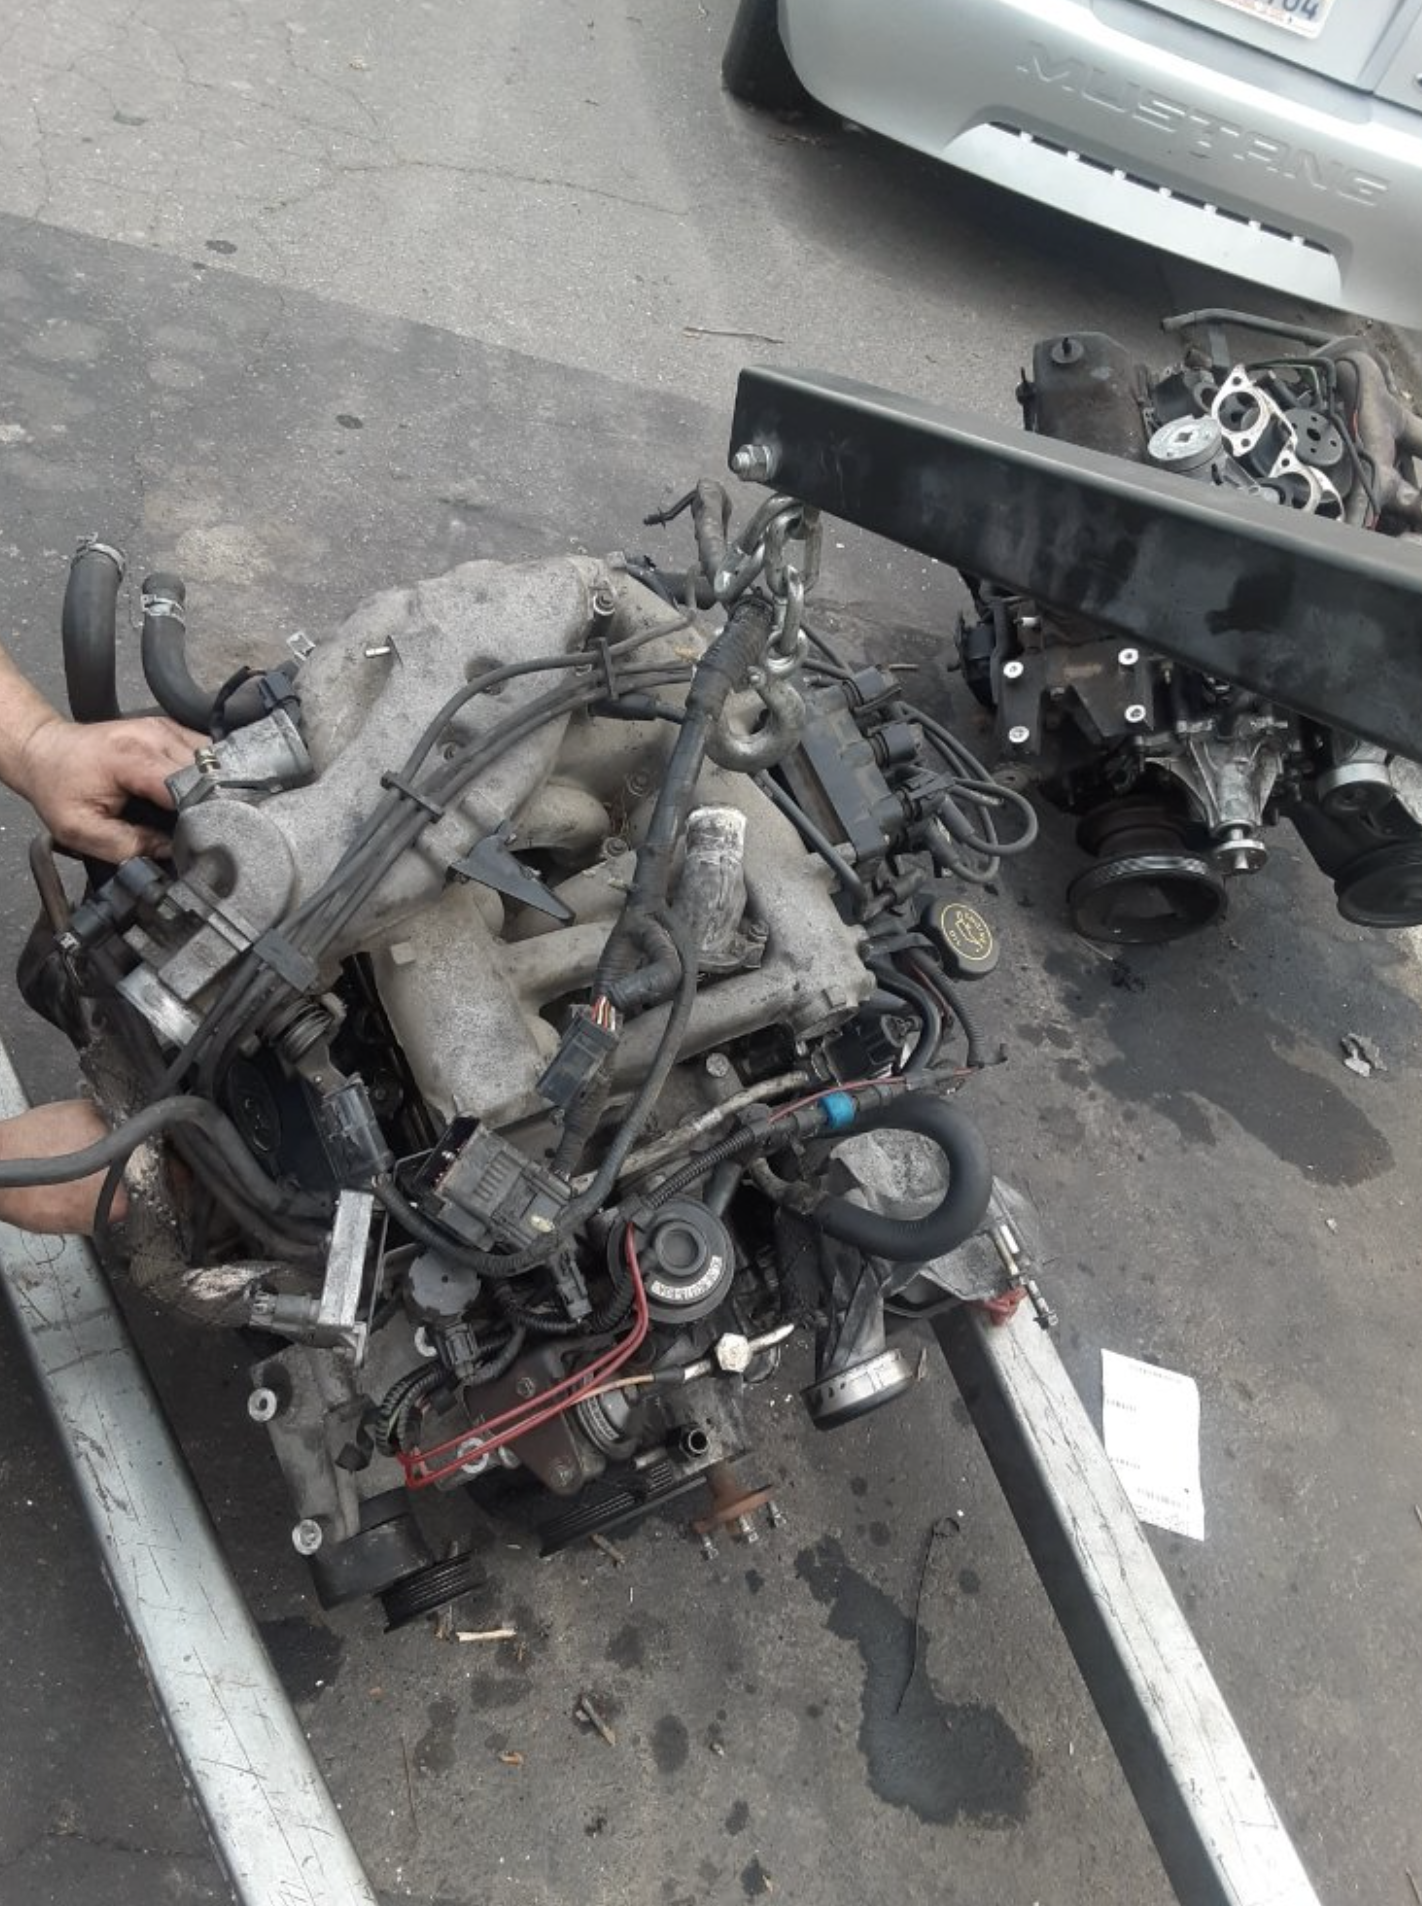 this image shows car repair in Tampa, FL